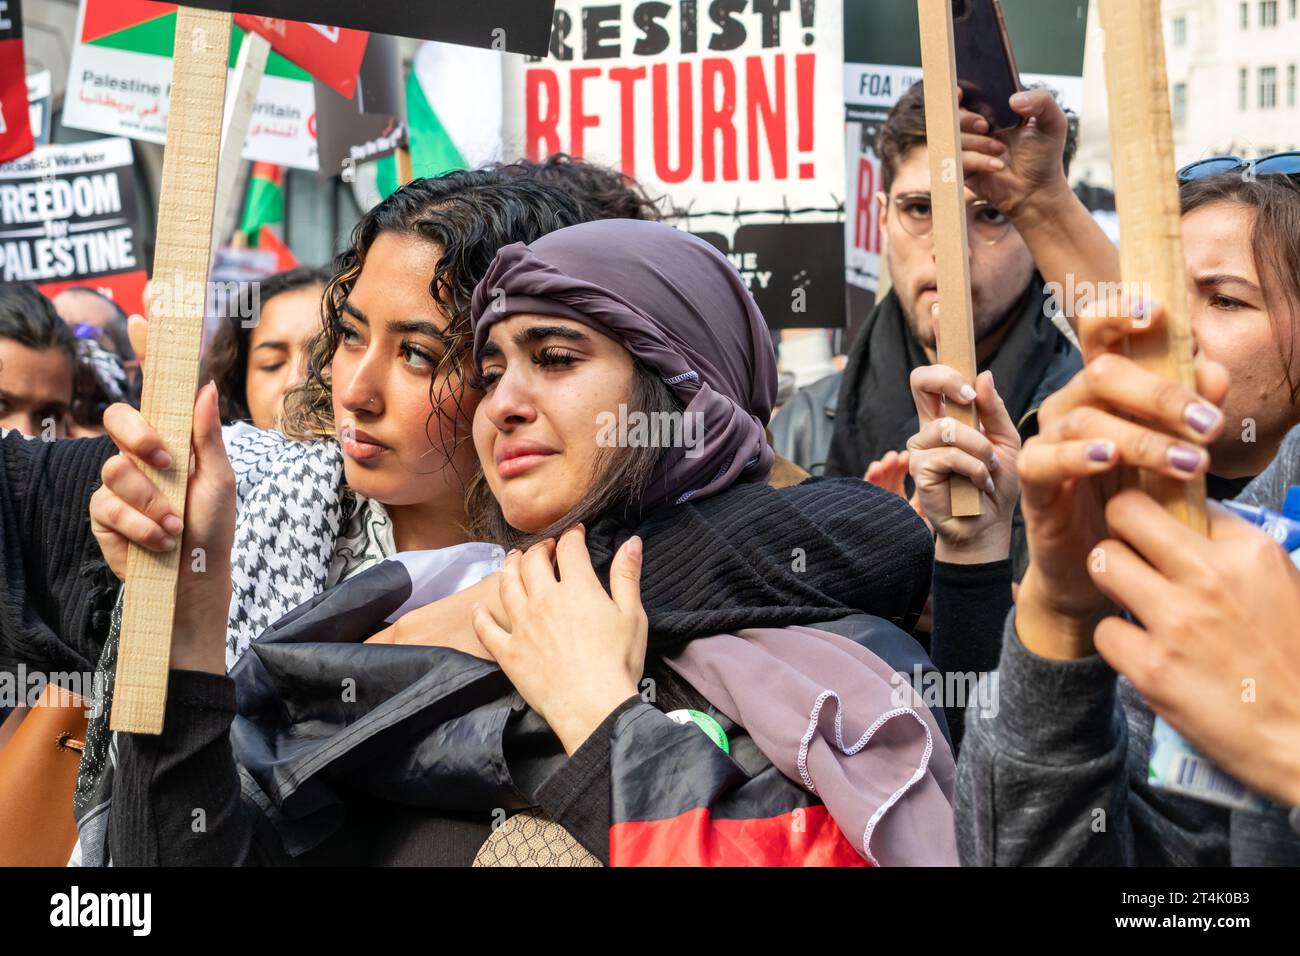 Eine junge Frau, die während des Protests in London tränend war. Stockfoto